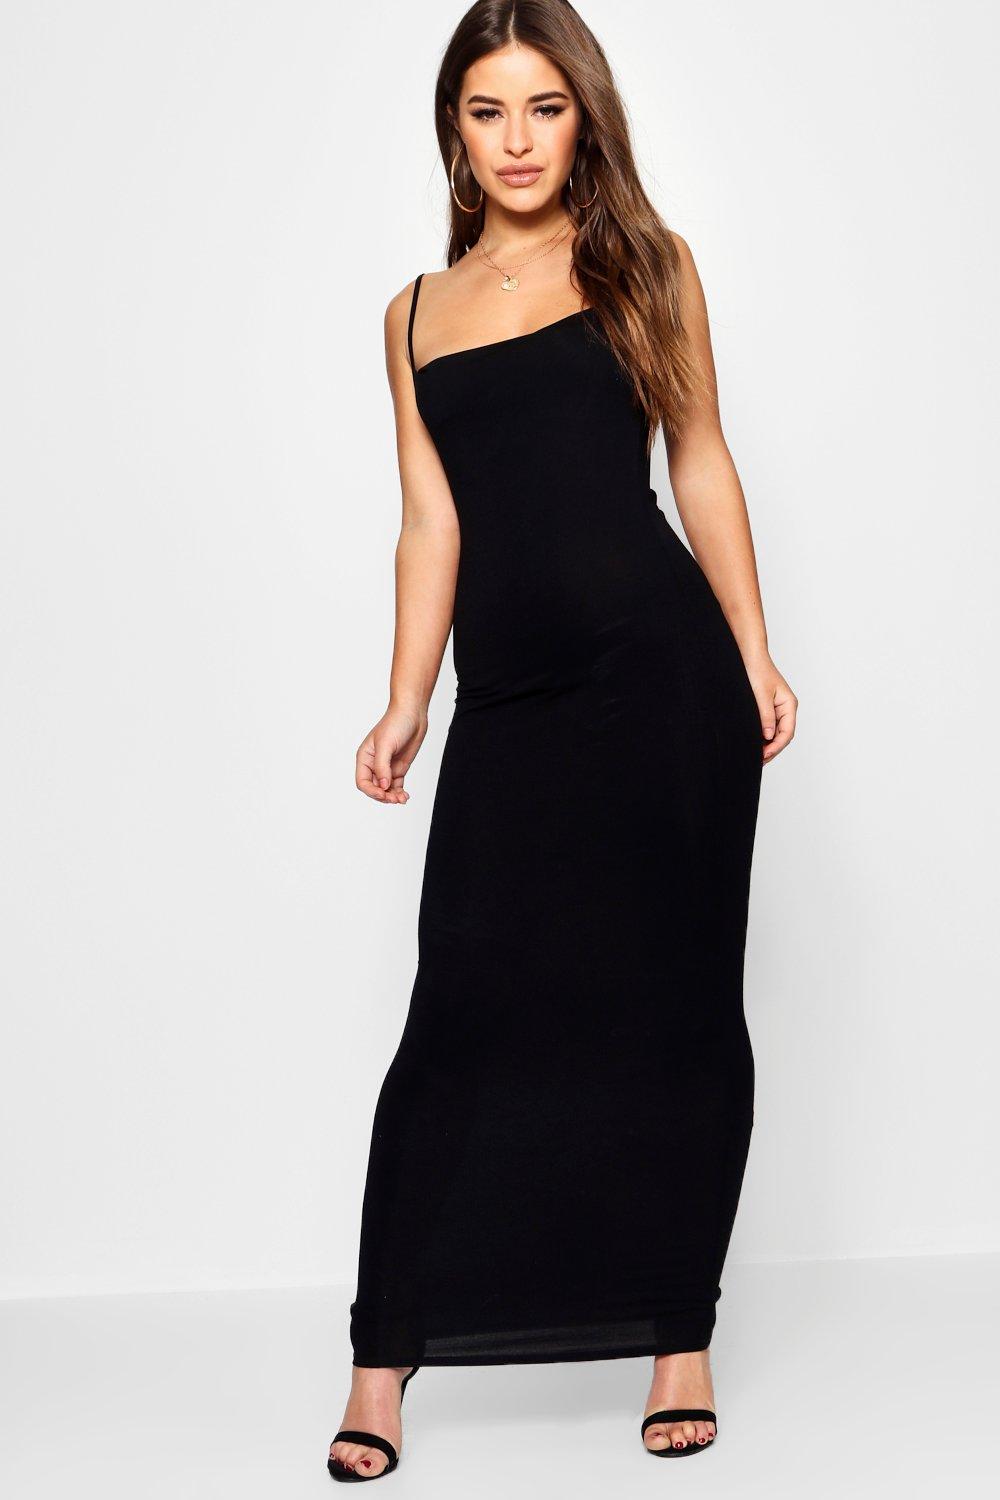 long black strap dress